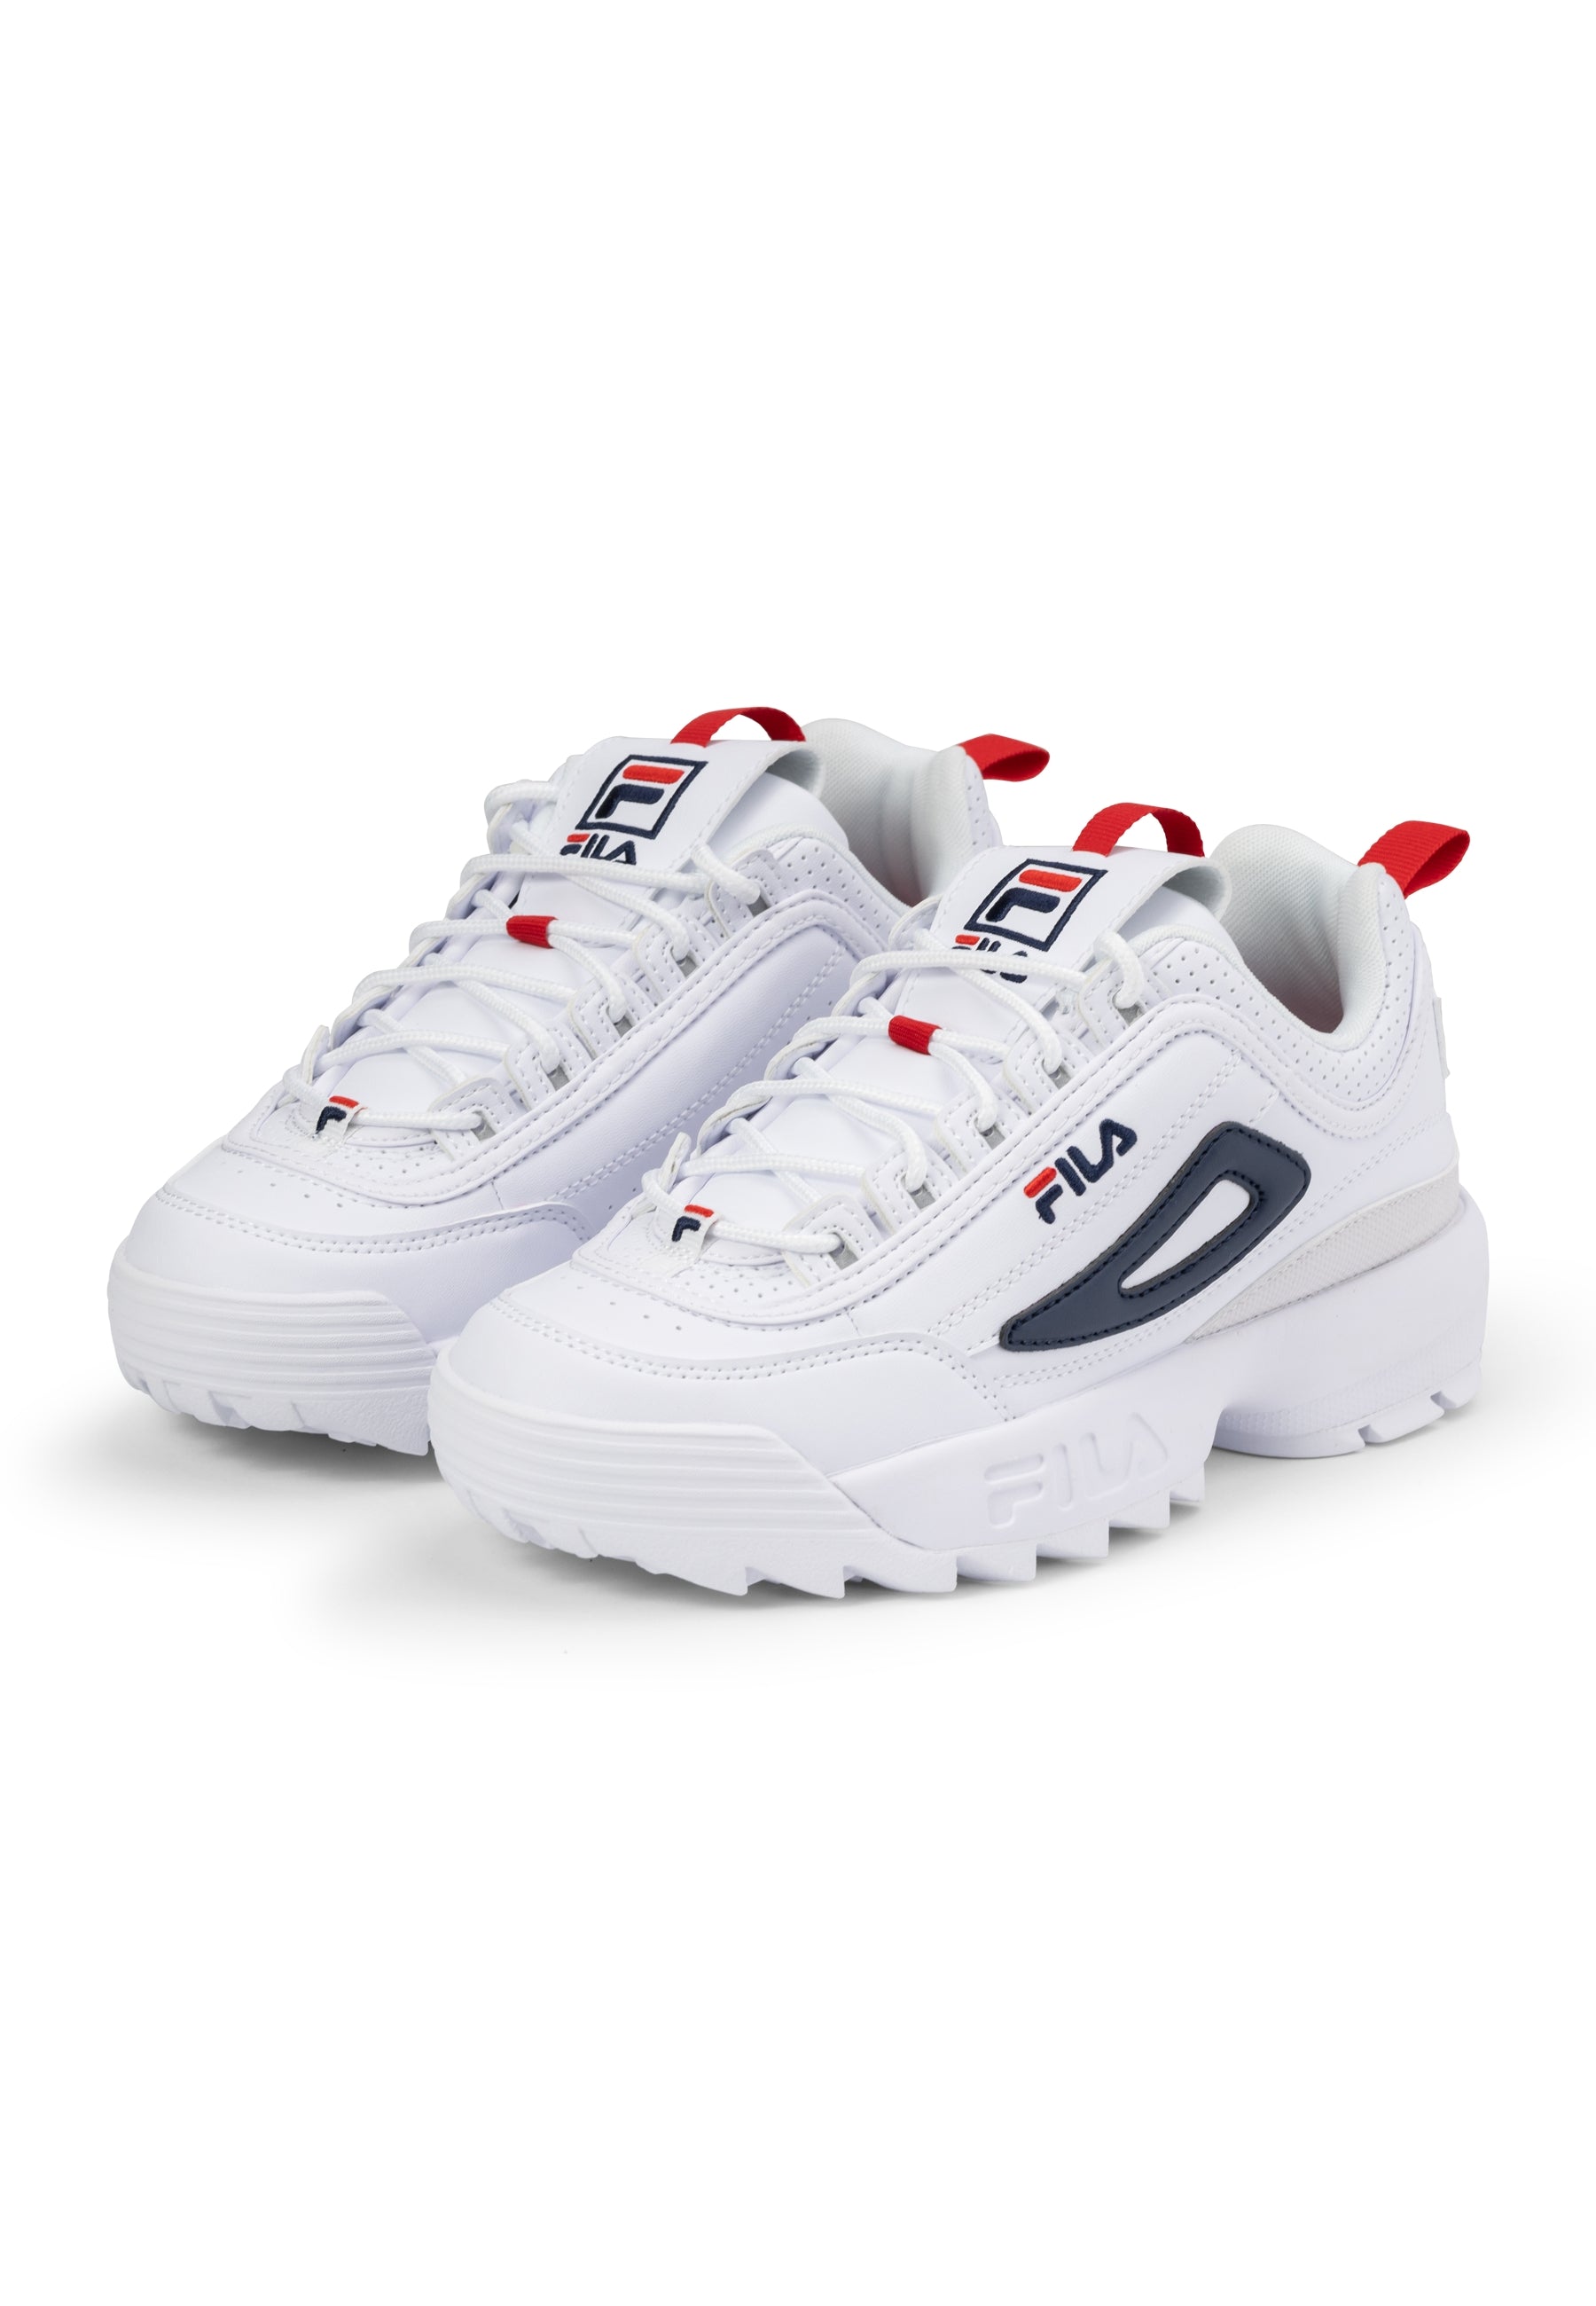 Disruptor CB Wmn in White-Fila Navy Sneakers Fila   